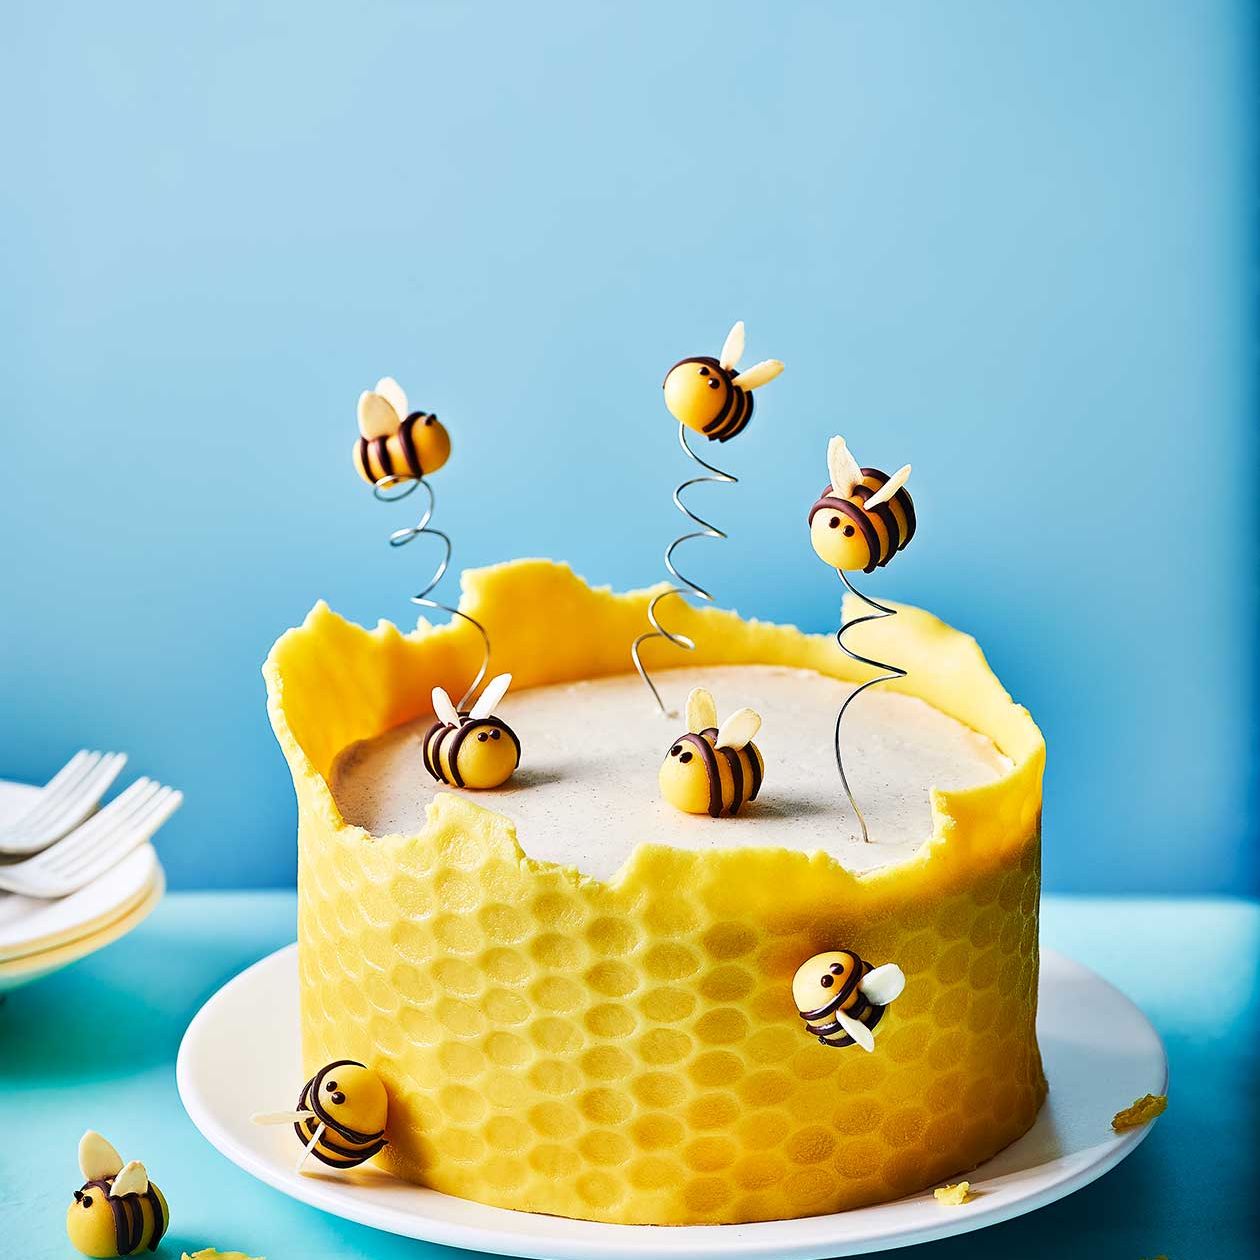 Honey Cake Recipe | How To Make Indian Honey Cake | Cook Click N Devour!!!